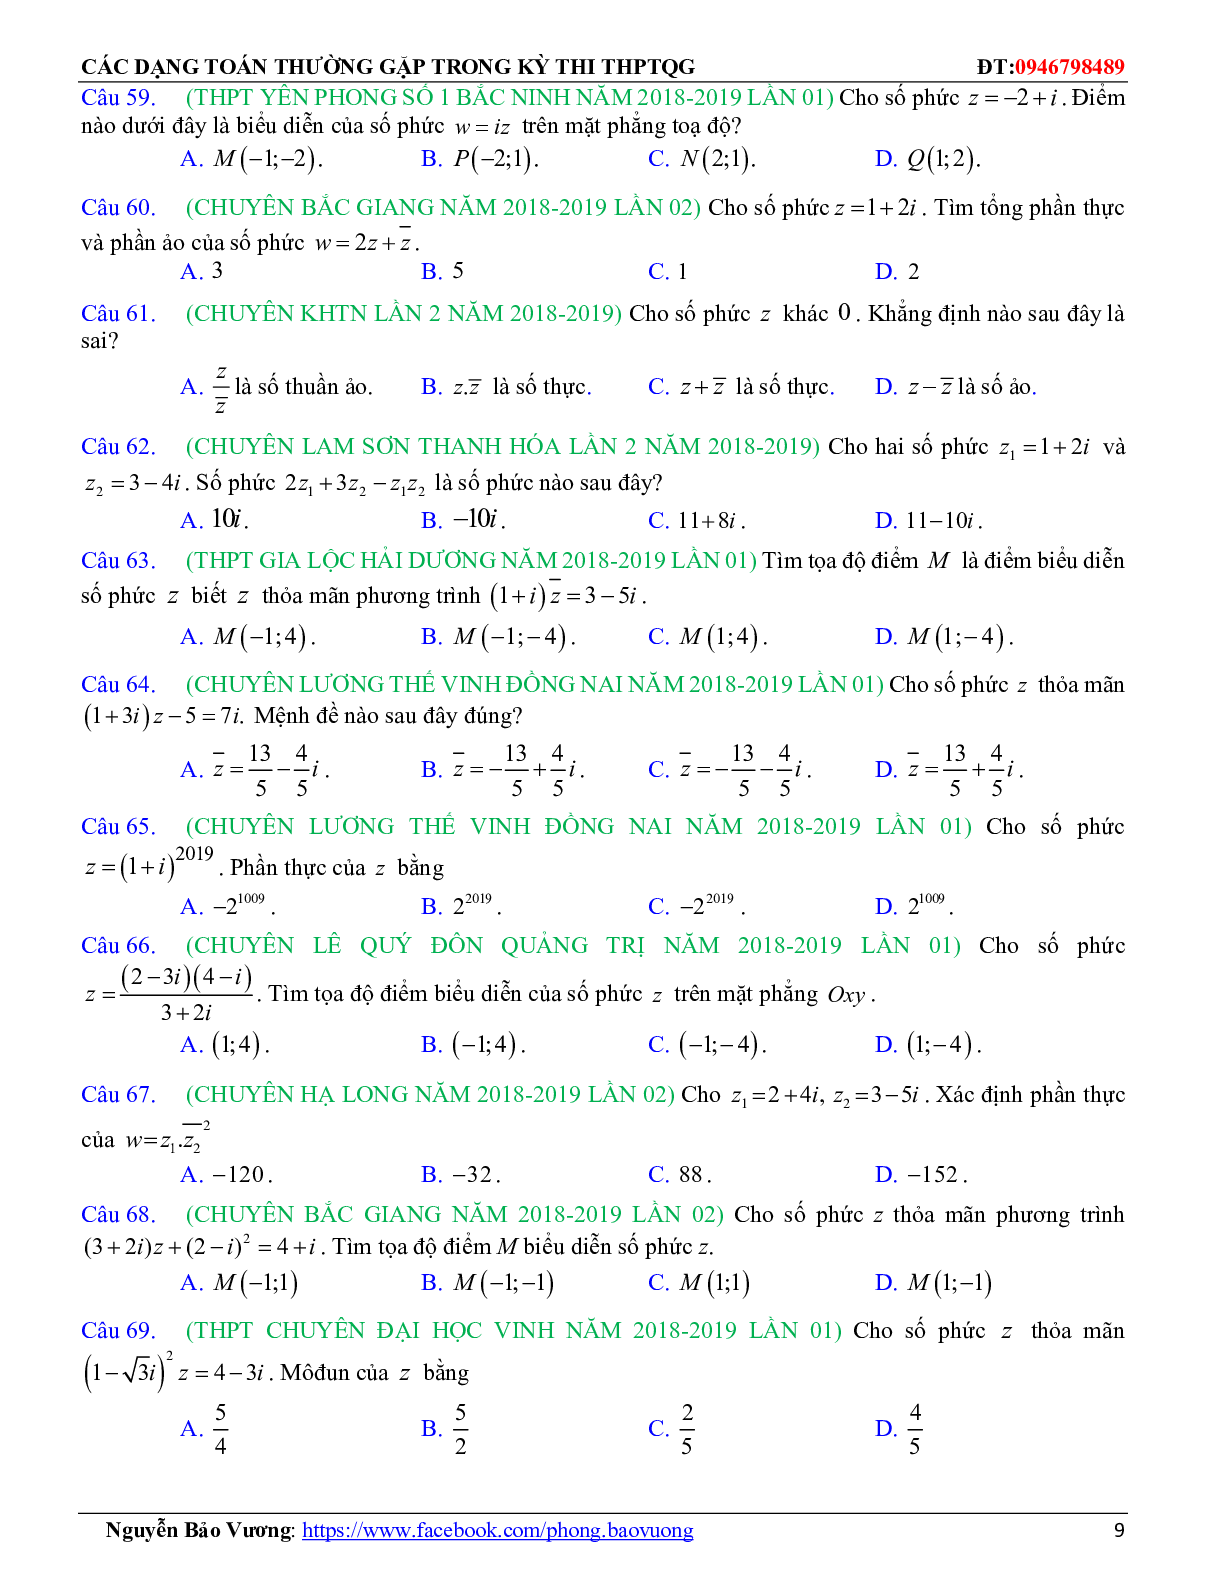 Các dạng toán về số phức thường gặp trong kỳ thi THPTQG (trang 9)